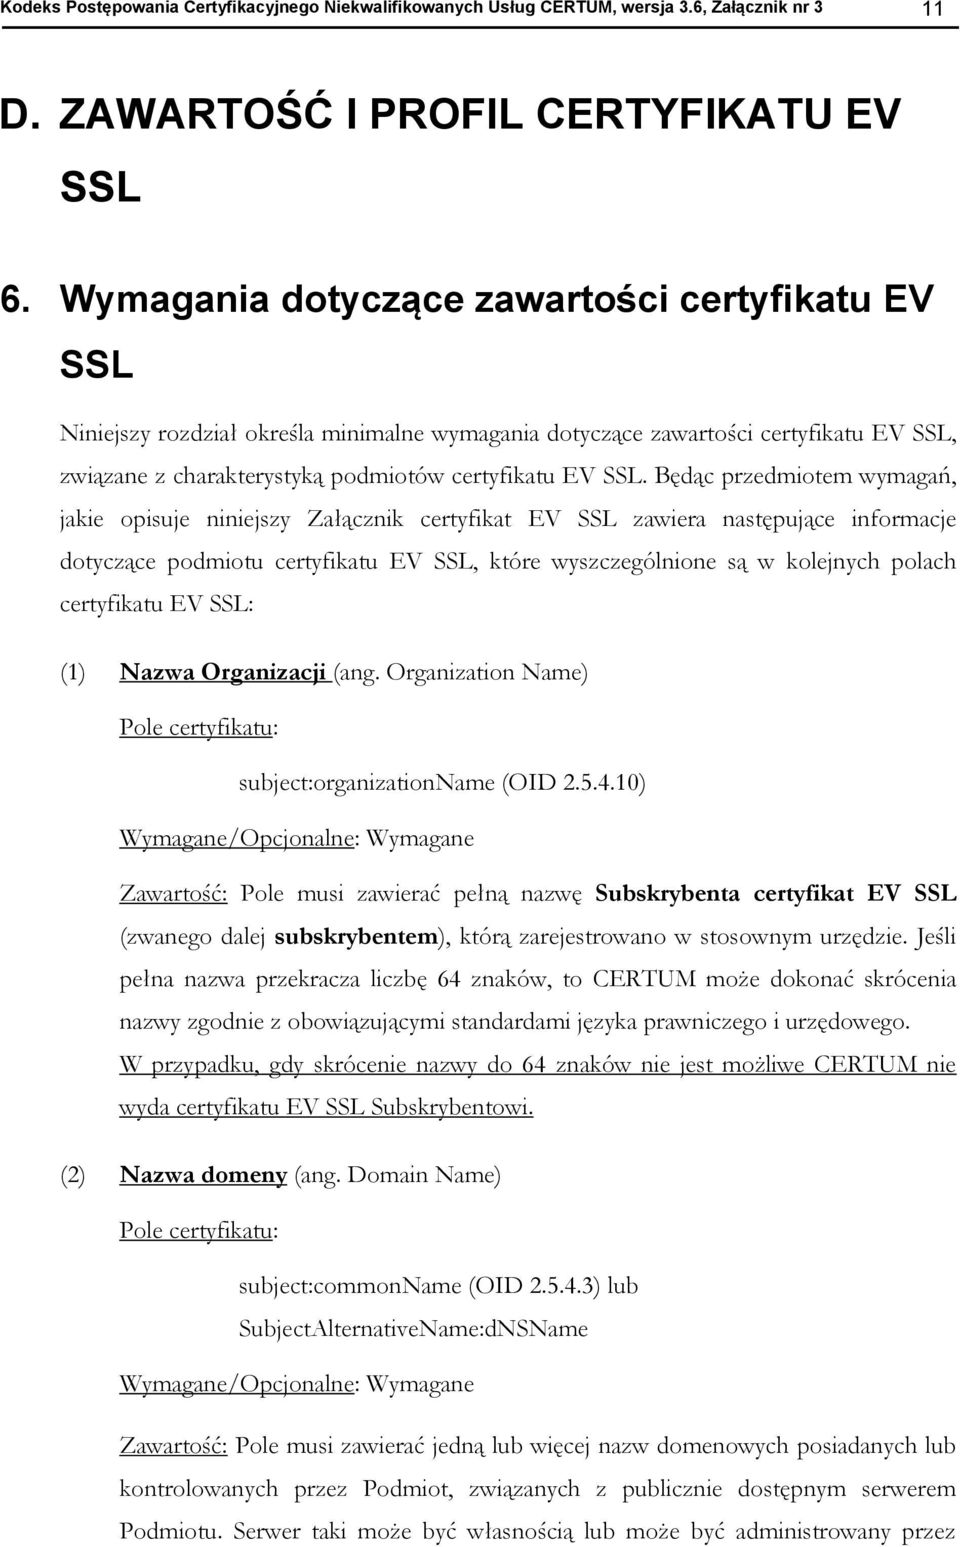 Będąc przedmiotem wymagań, jakie opisuje niniejszy Załącznik certyfikat EV SSL zawiera następujące informacje dotyczące podmiotu certyfikatu EV SSL, które wyszczególnione są w kolejnych polach